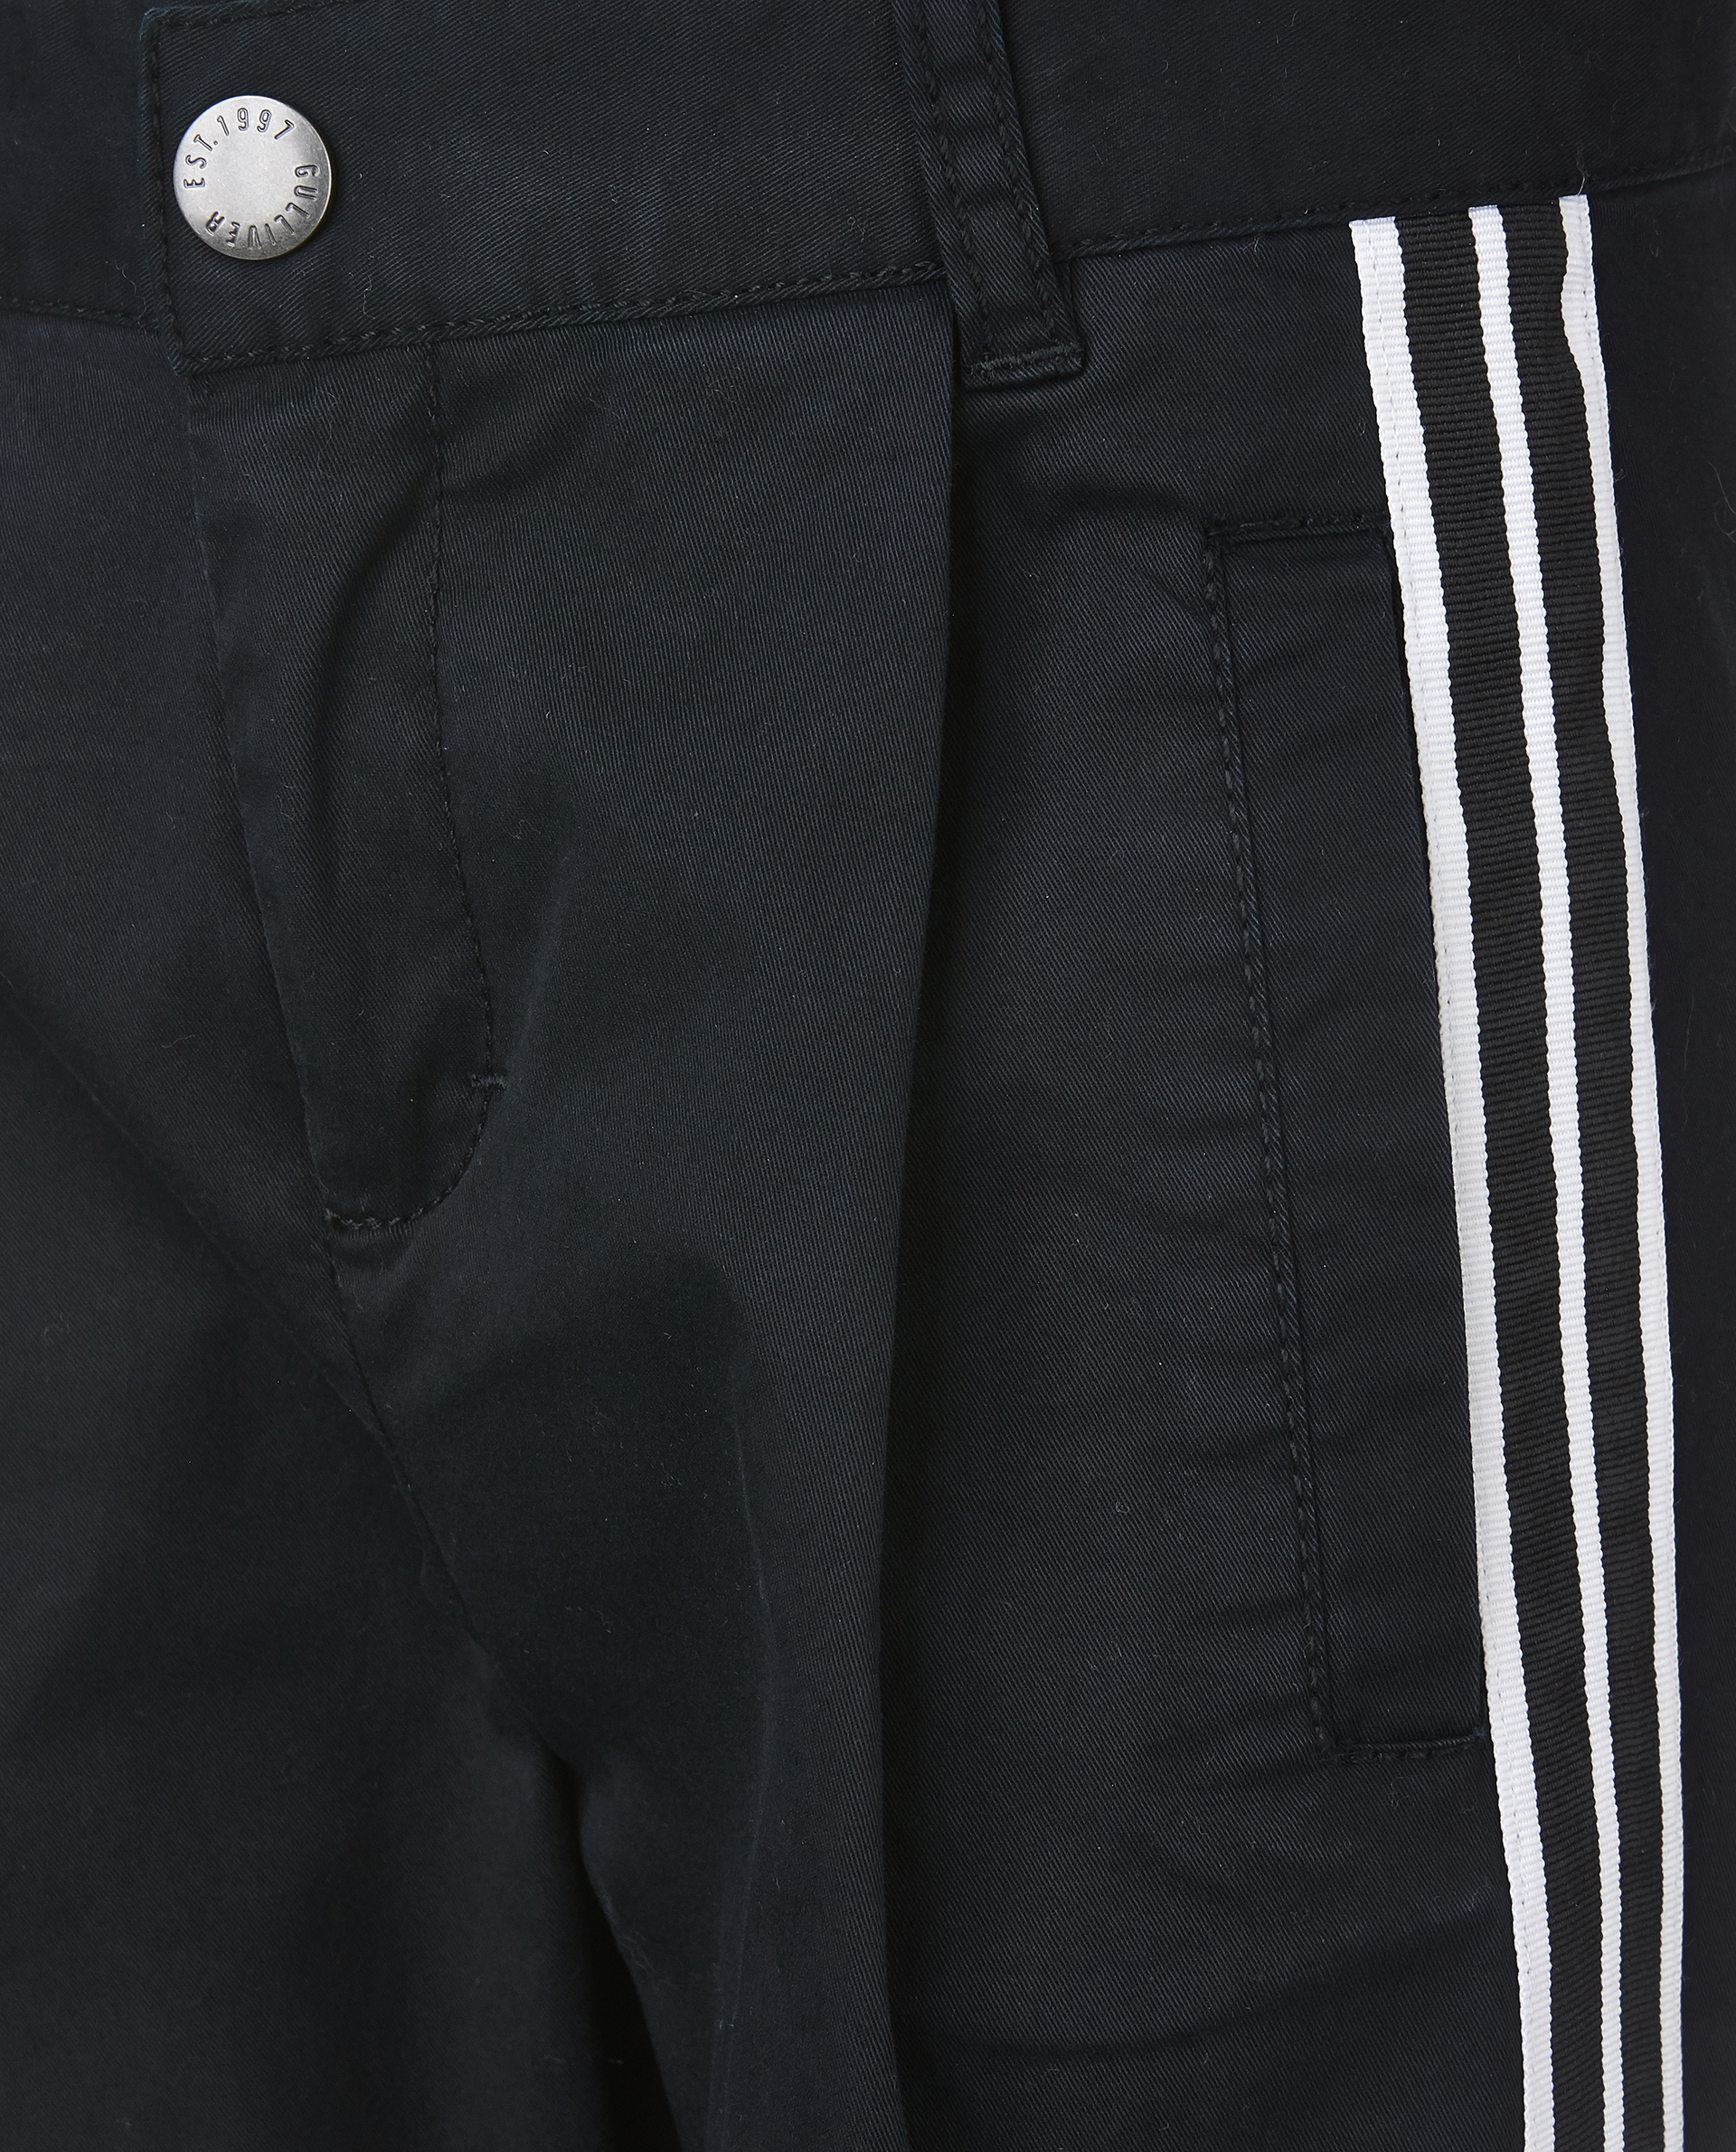 Черные брюки с лампасами Gulliver 11905BMC6301, размер 104, цвет черный - фото 4